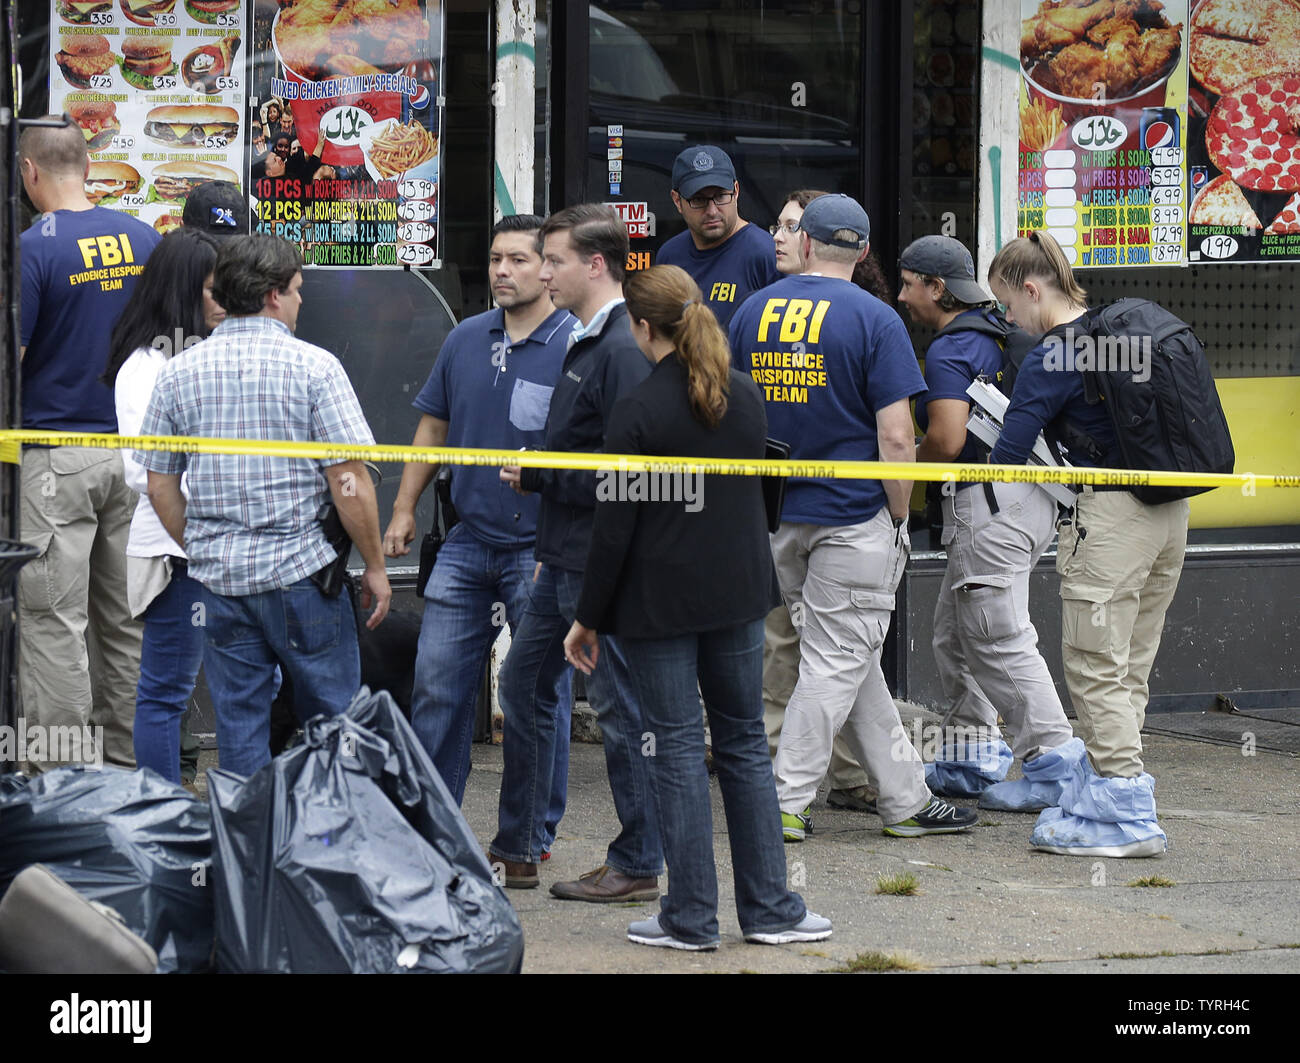 Gli investigatori FBI e polizia si raccolgono al di fuori del primo americano fritto di pollo dopo Ahmad Khan Rahami, l'uomo responsabile di New York e New Jersey bombardamenti, è stato fermato dalla polizia il 19 settembre 2016 a Elizabeth, in New Jersey. Due giorni prima, l'esplosione di una bomba è andato fuori sulla West 23rd Street in Manhattan intorno a 8:30 p.m. il sabato, ferendo 29 persone su West 23rd Street a Manhattan. L'uomo responsabile per l'esplosione di Manhattan del sabato notte e un precedente bombardamento nel New Jersey, Ahmad Khan Rahami, è stato preso in custodia il lunedì dopo che egli è stato ferito in uno scontro a fuoco con Foto Stock